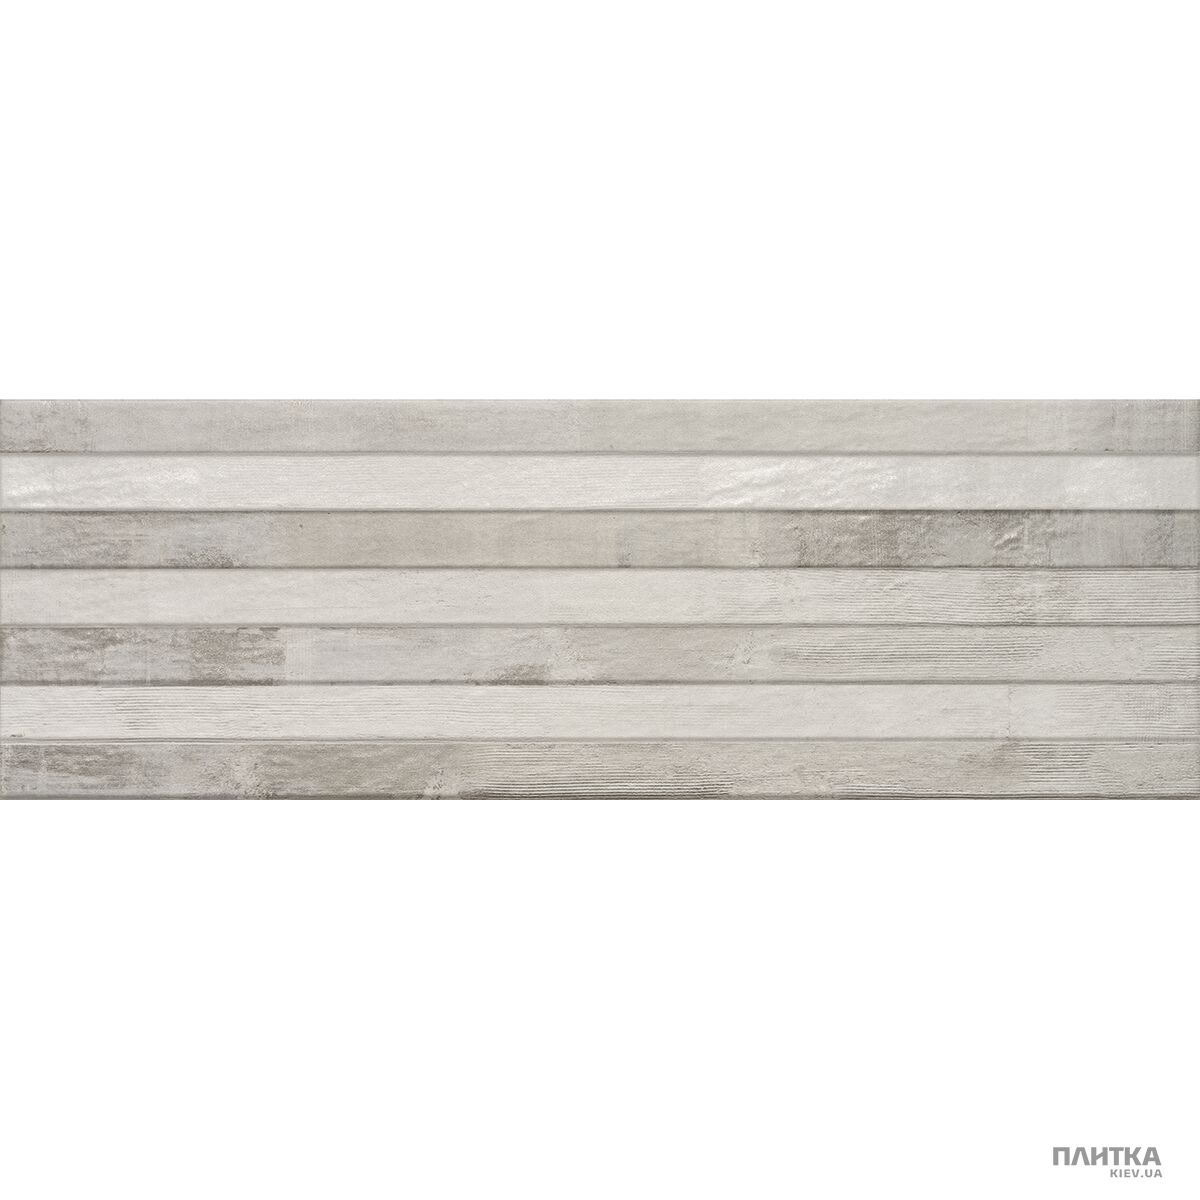 Плитка Alaplana Anduin ANDUIN MOSAIC серый